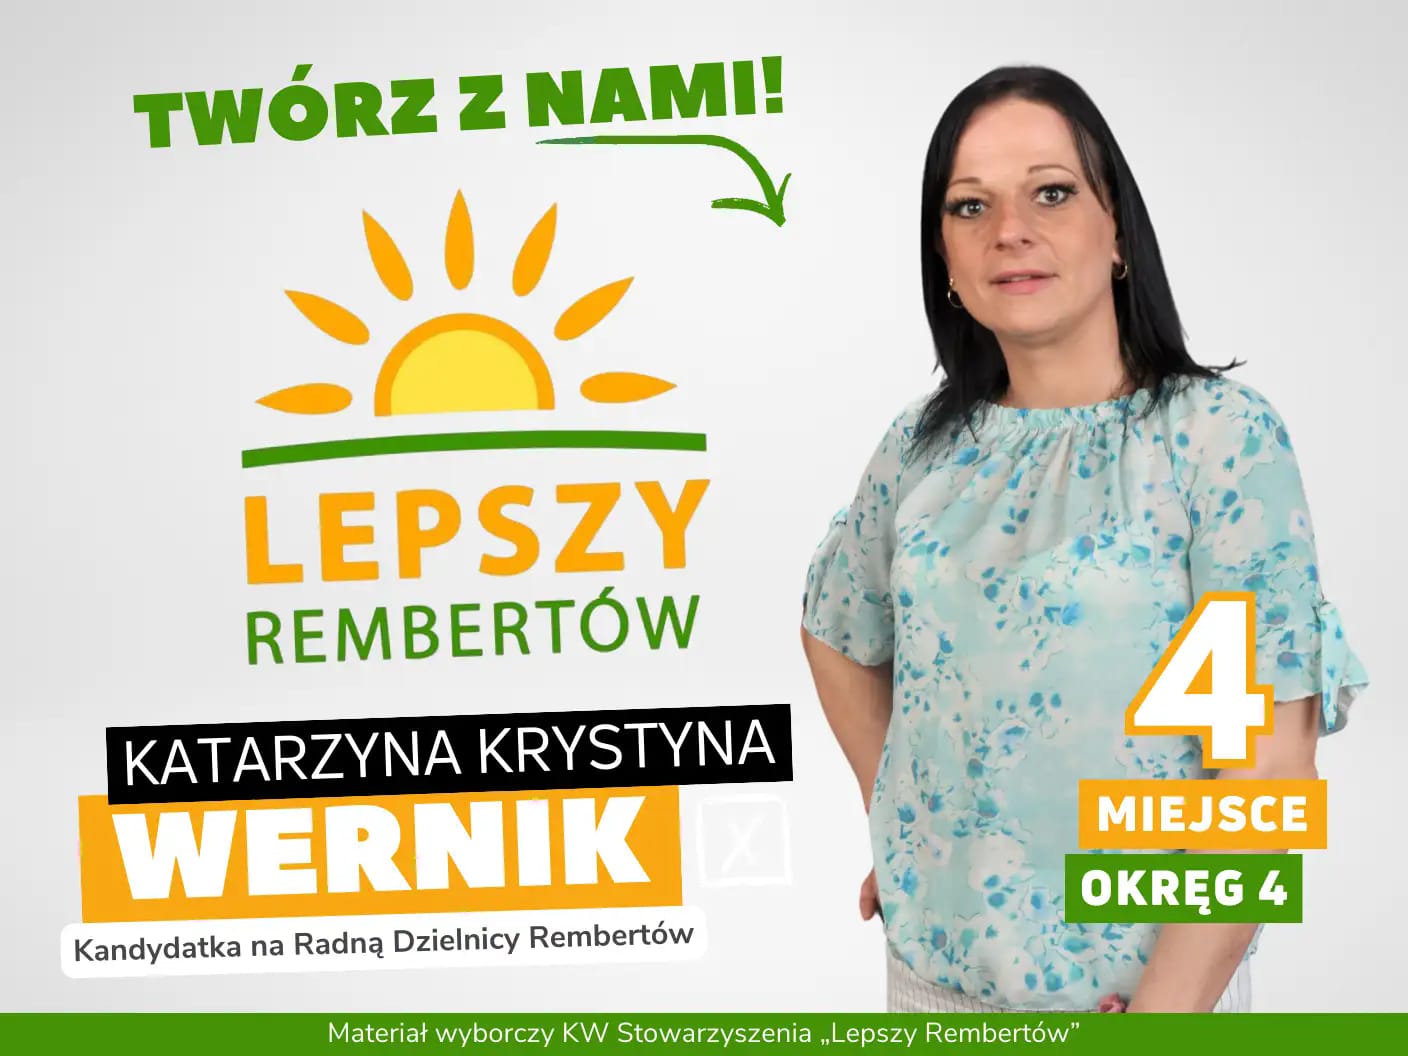 Katarzyna Krystyna Wernik Okręg   	
			4 miejsce 4